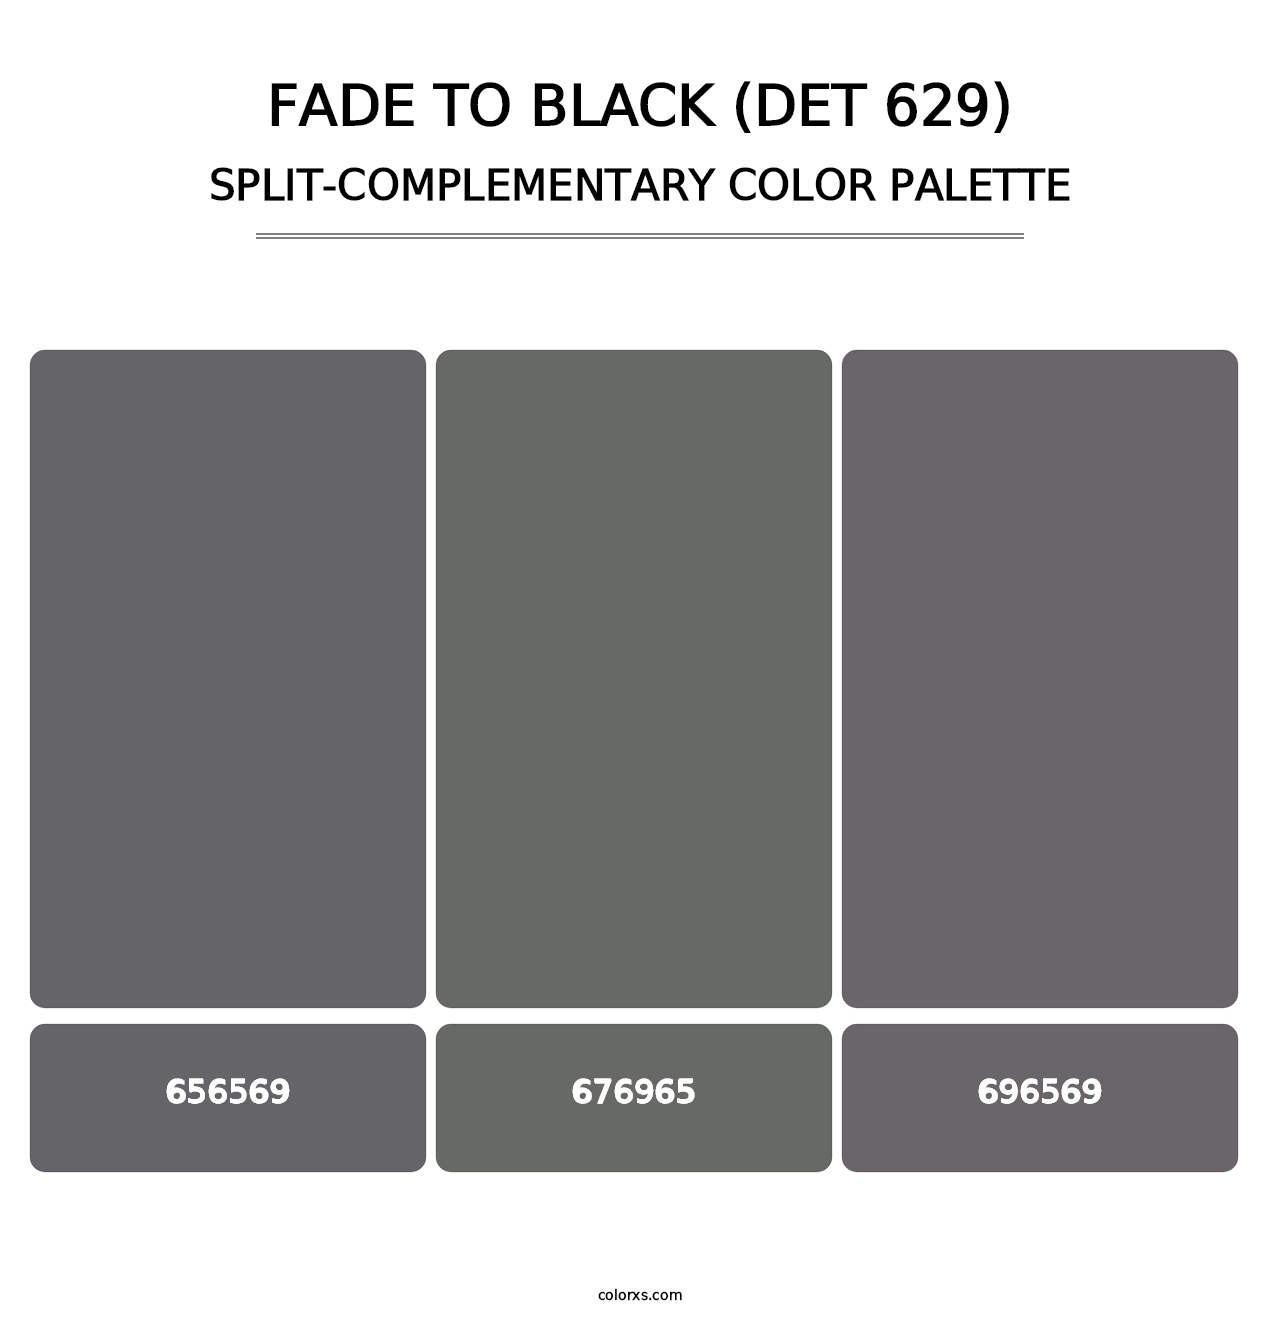 Fade to Black (DET 629) - Split-Complementary Color Palette